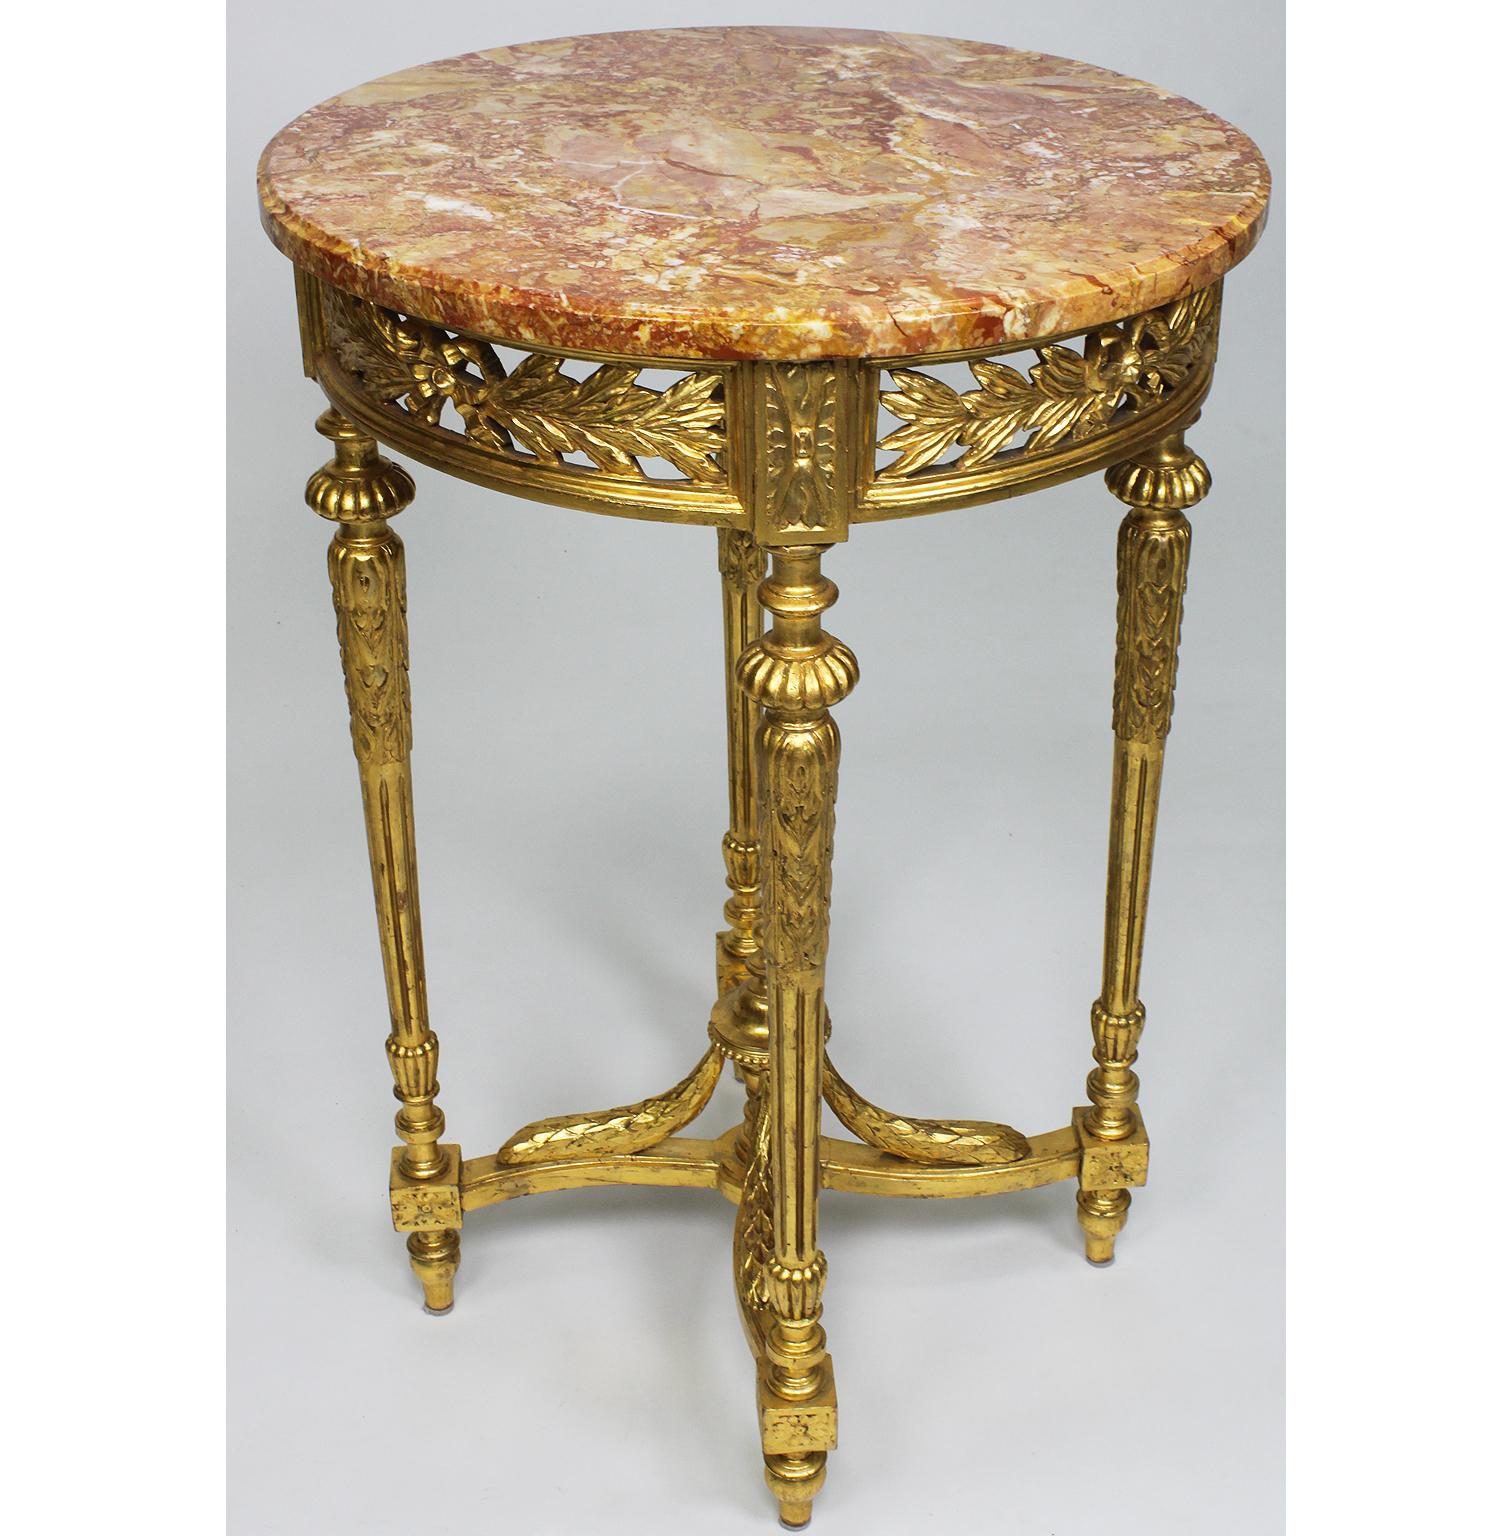 Französisch Louis XVI Stil vergoldetes Holz geschnitzt Guéridon Beistelltisch mit Marmorplatte. Die runde vergoldetem Holz geschnitzt Schürze mit einem Akanthus gebundenen Blattkranz, auf vier kannelierten geschnitzten Beinen verbunden mit einer